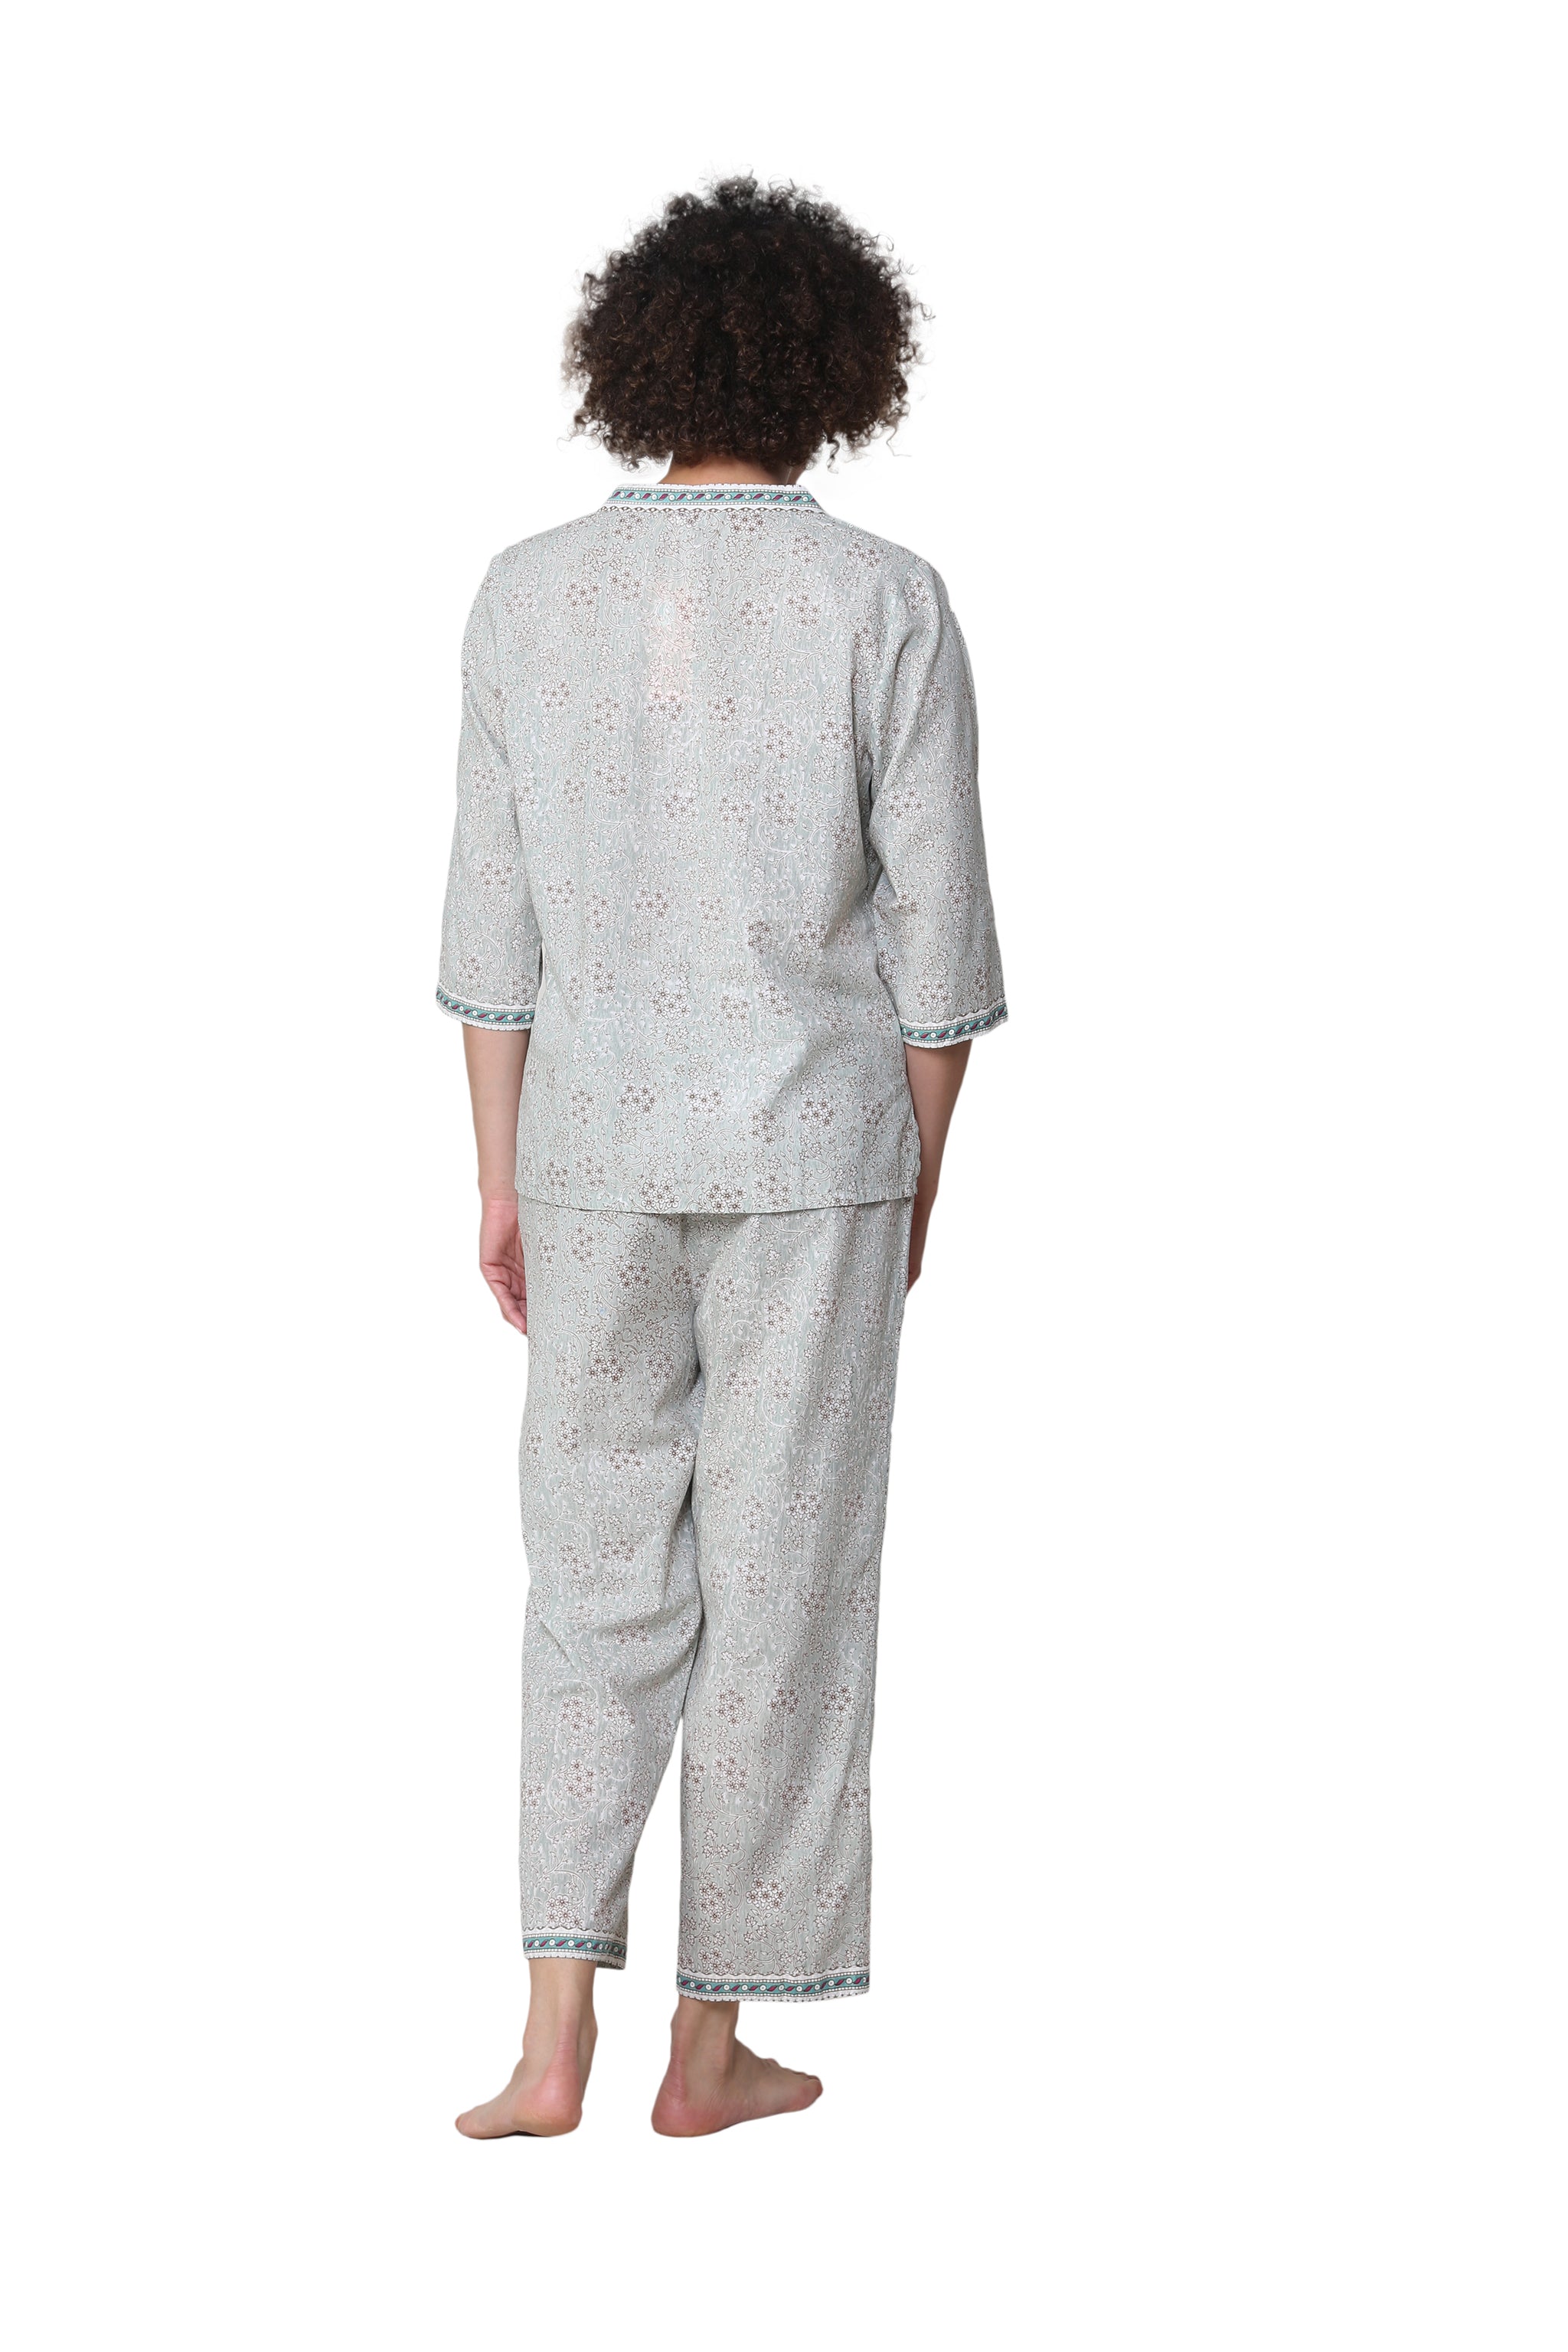 La Cera 3/4 Sleeve Pleat Front Capri Pajama Set – La Cera™